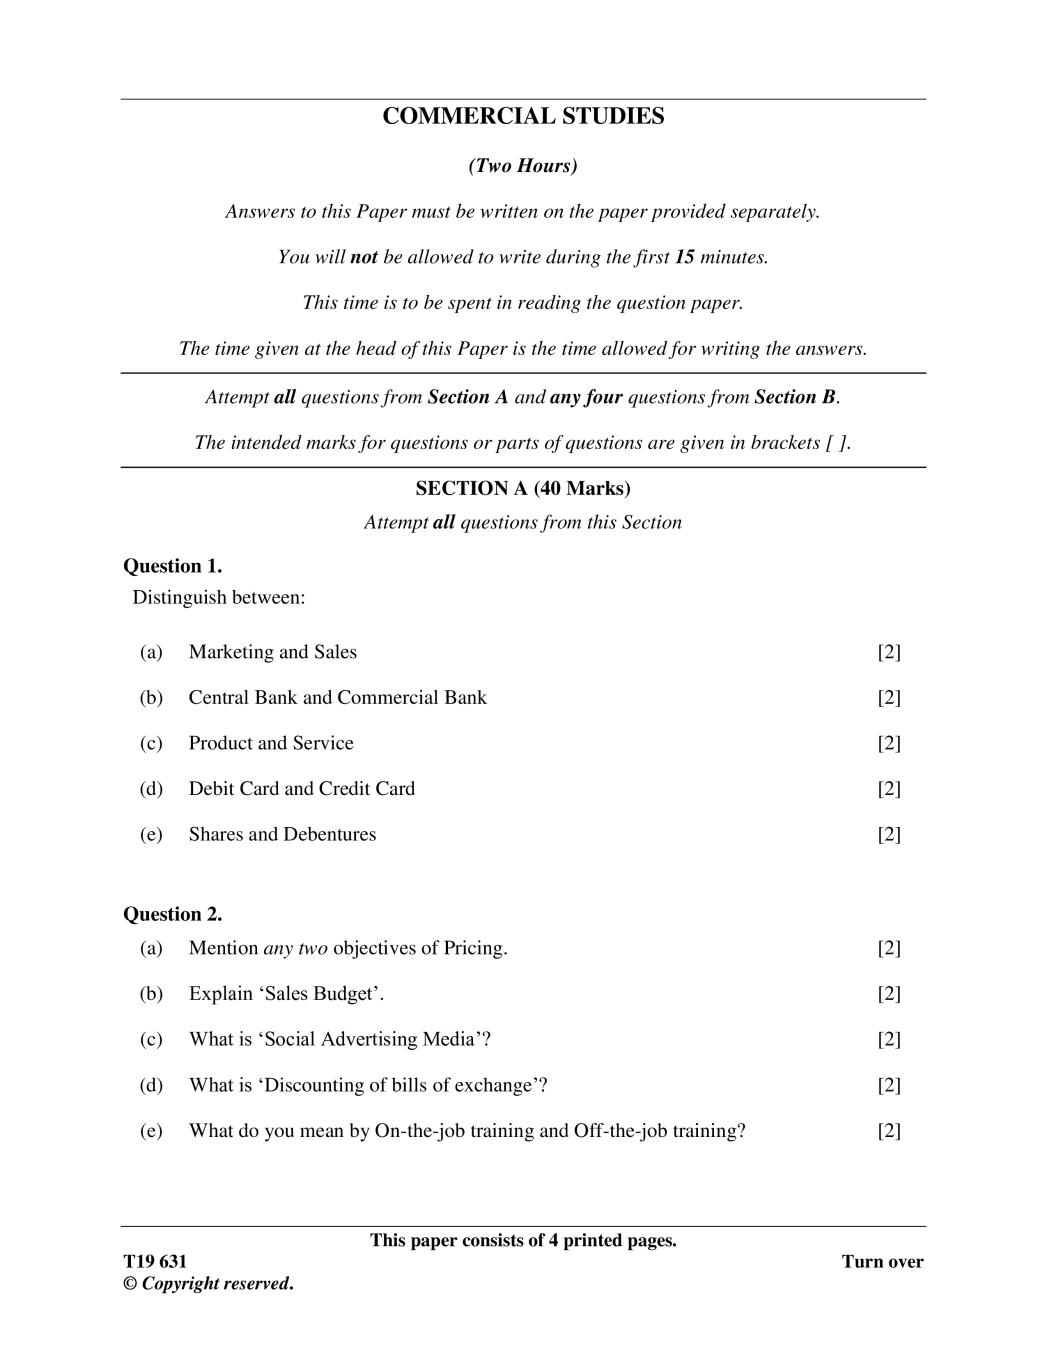 ICSE Class 10 Specimen Paper 2019 for Commercial Studies  - Page 1